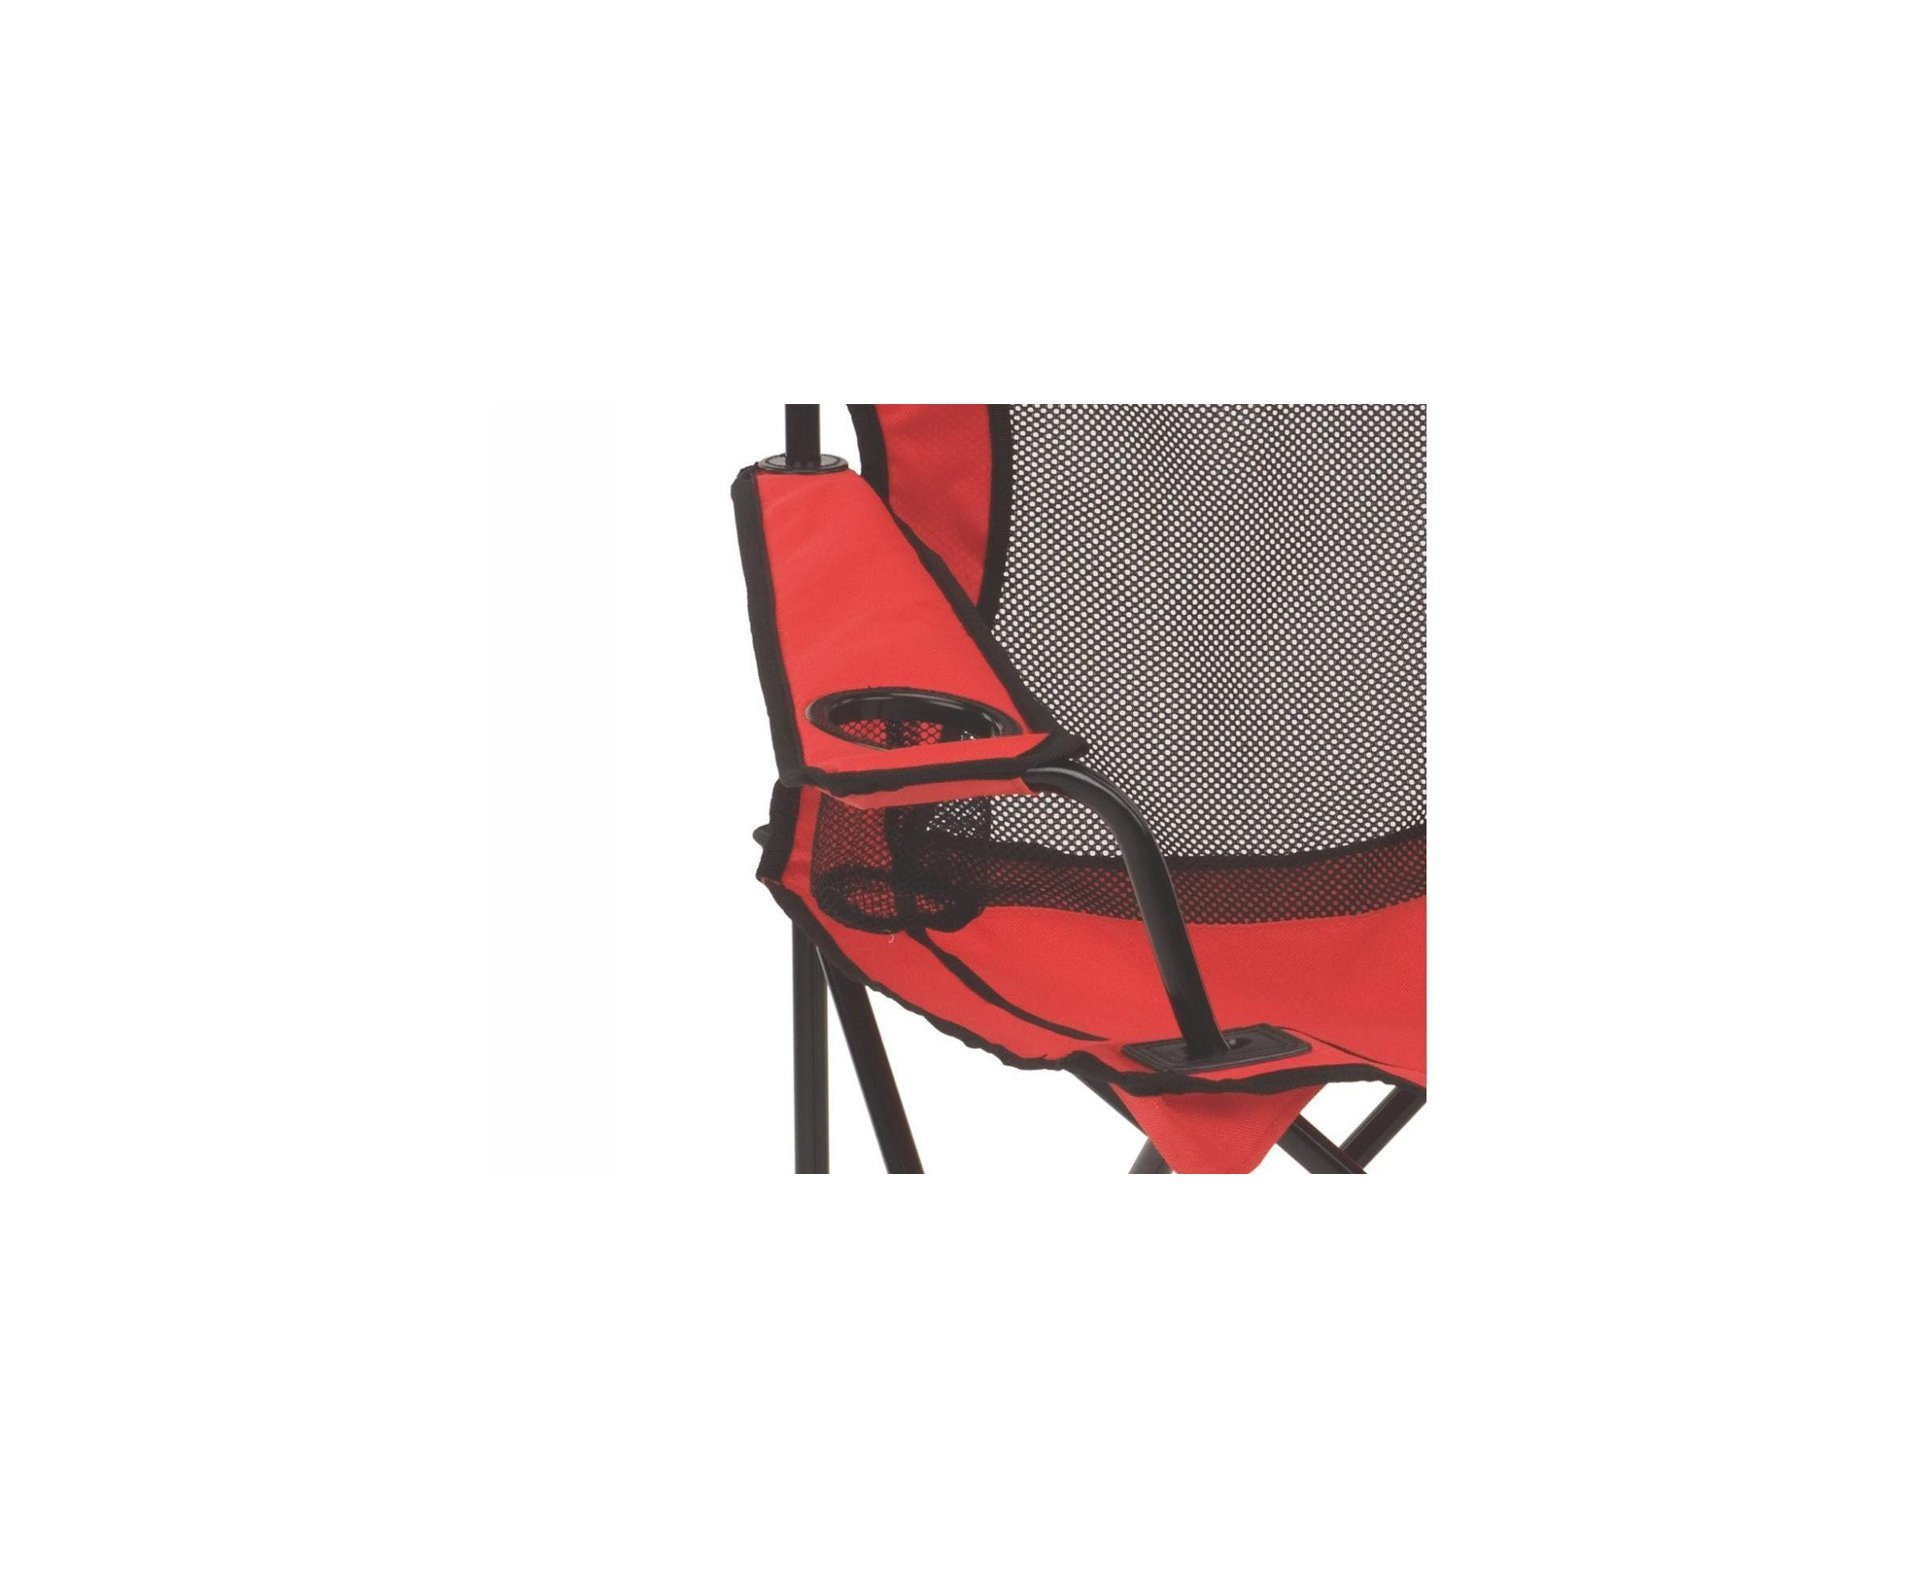 Cadeira Dobrável Coleman-Vermelha